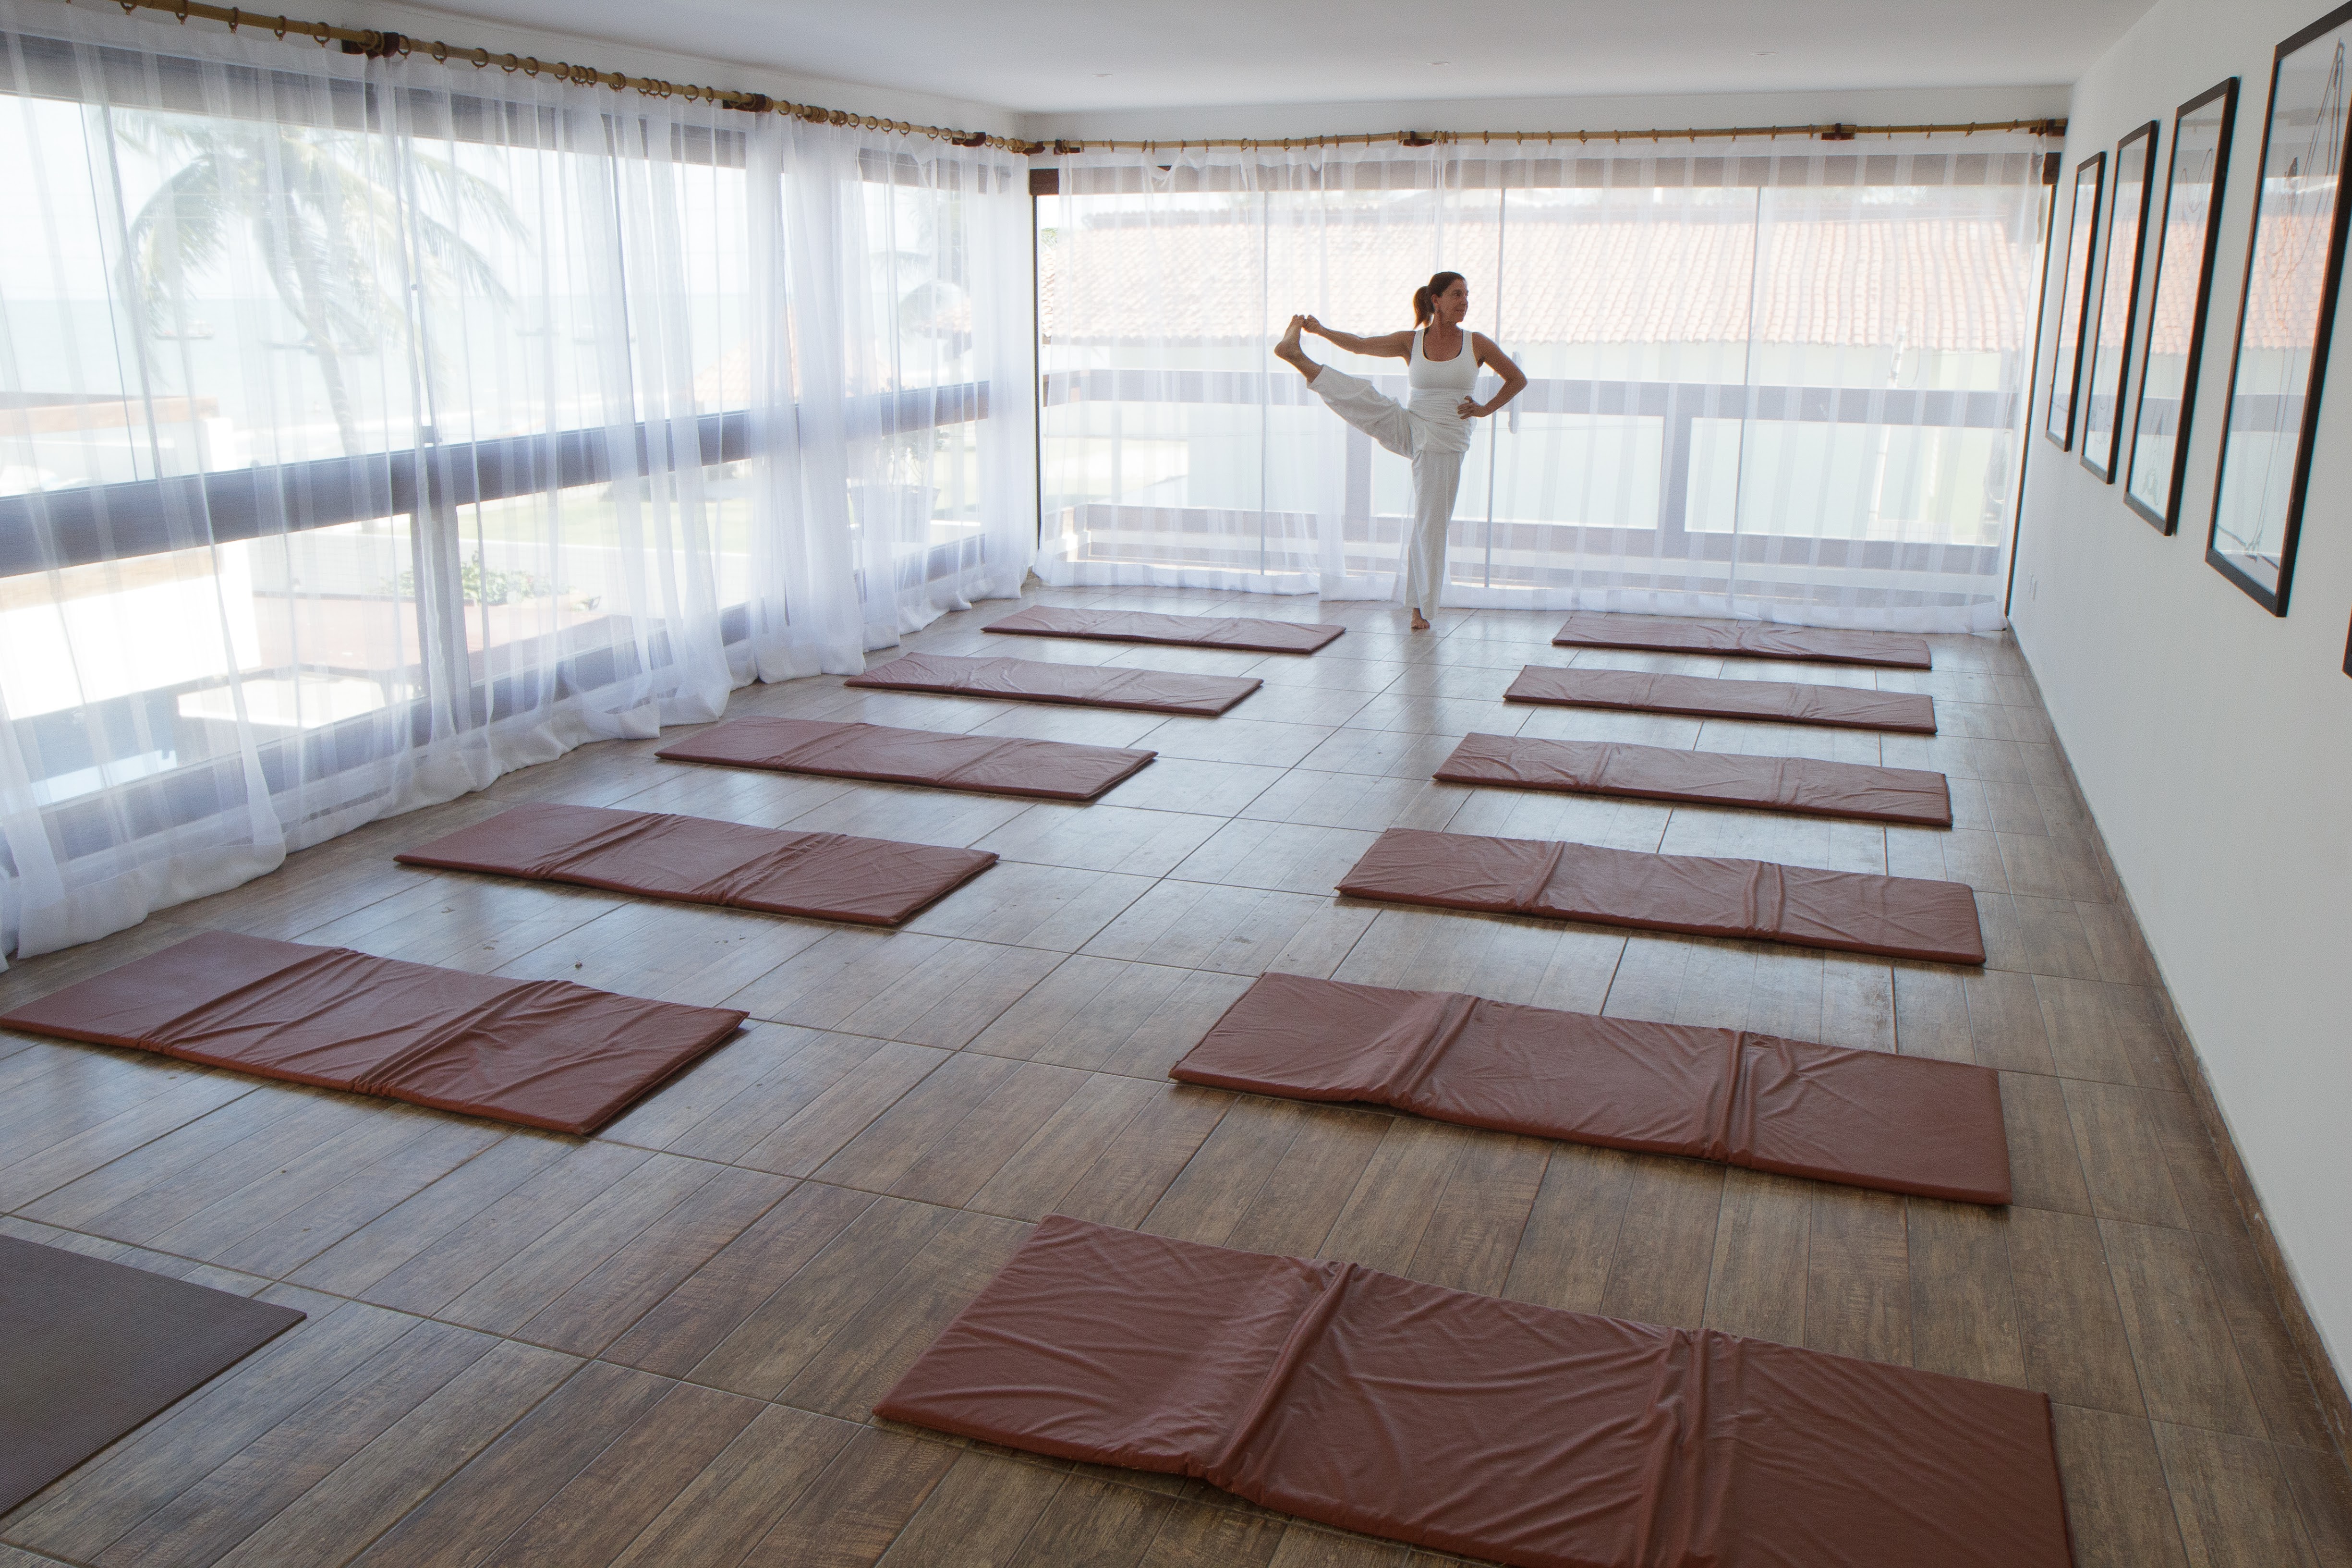 Viagem zen: 10 lugares para um retiro espiritual com meditação e yoga